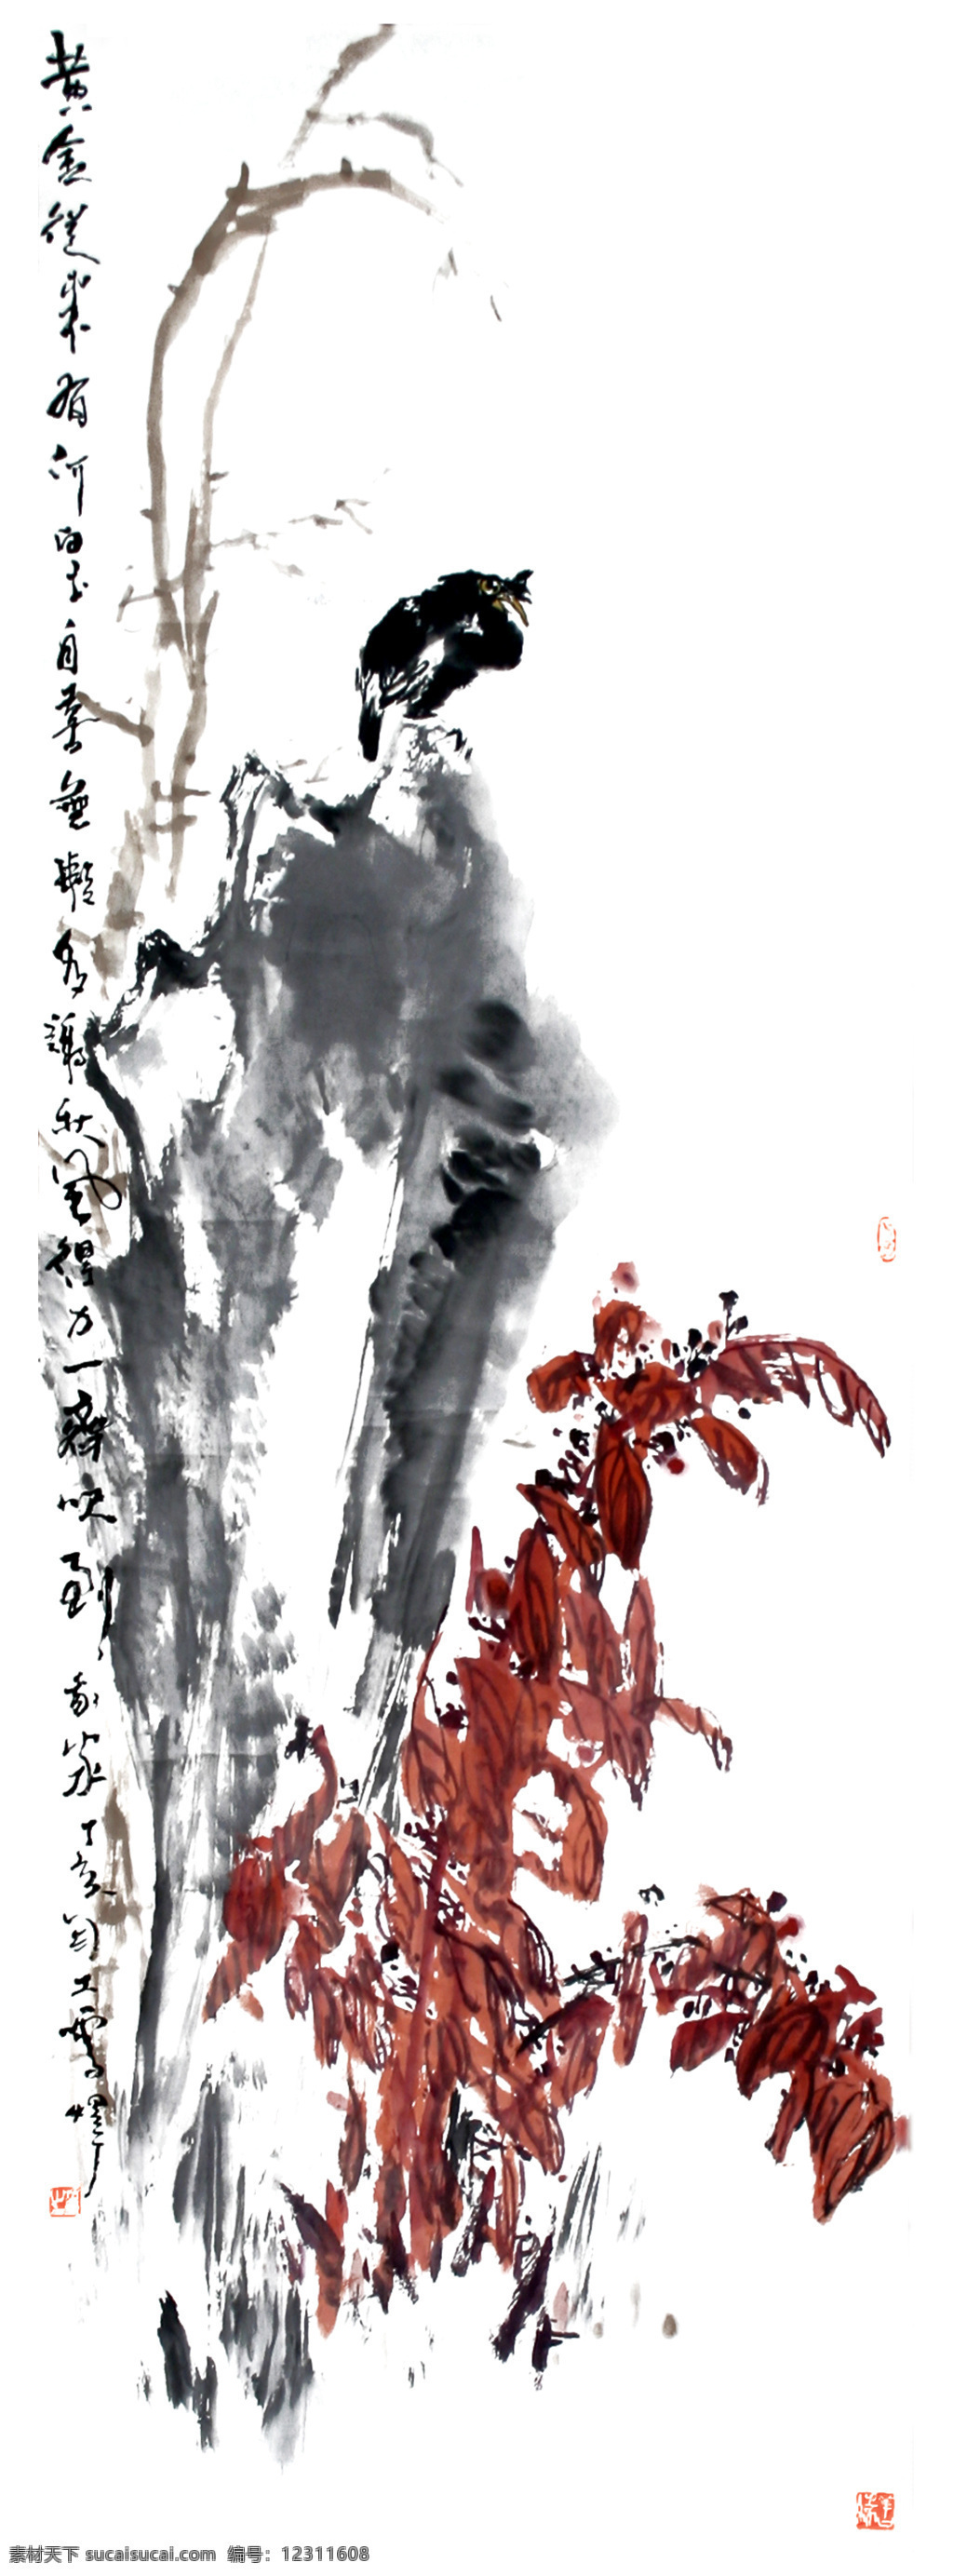 笔墨 国画 水墨画 中国画 中国艺术 绘画艺术 装饰画 中堂画 书画 文化艺术 书画文字